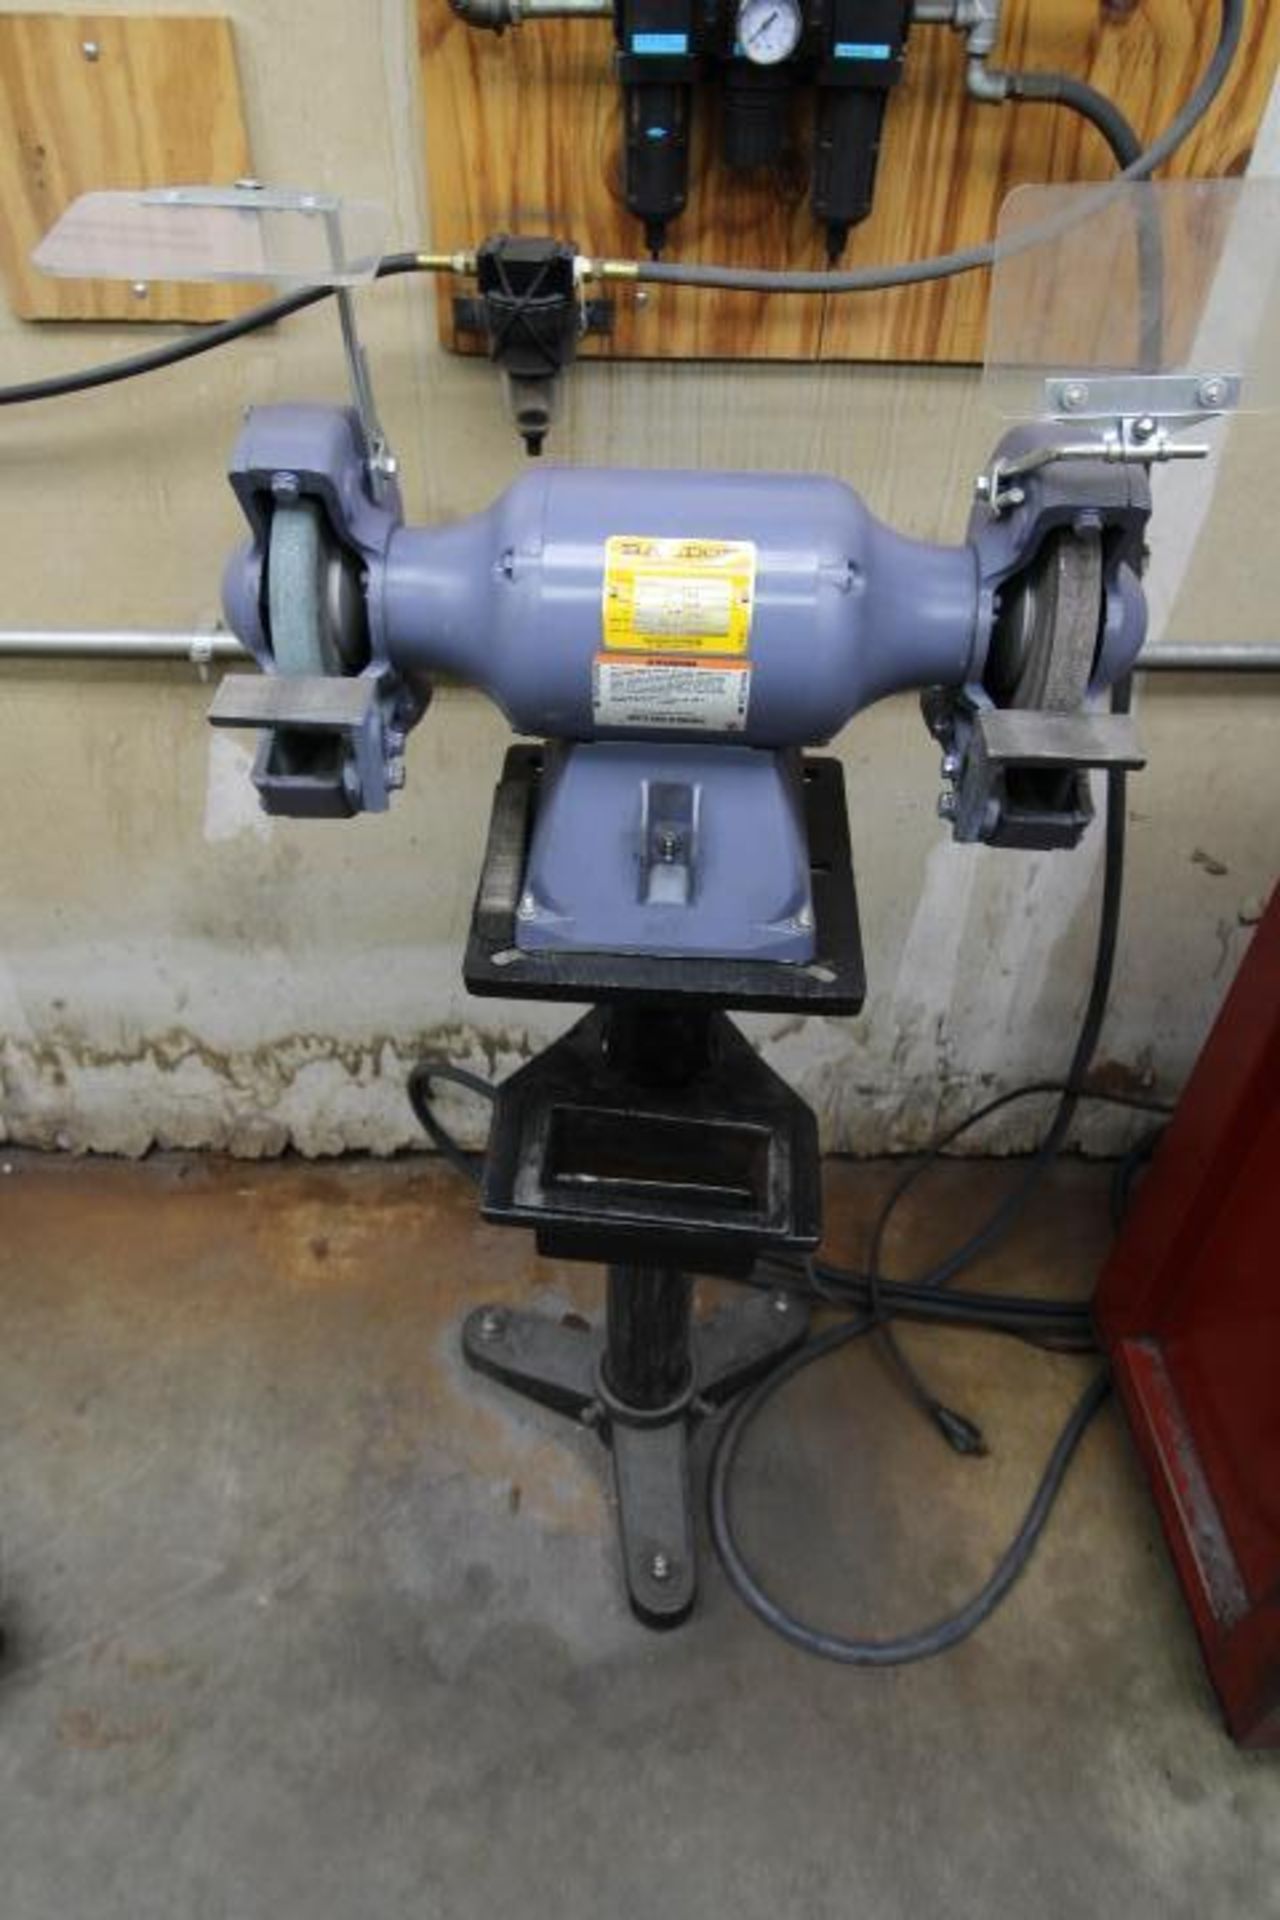 PEDESTAL GRINDER, BALDOR MDL. 8107W, 8" grinding wheels, 3/4 HP, 115 v., 3,600 RPM